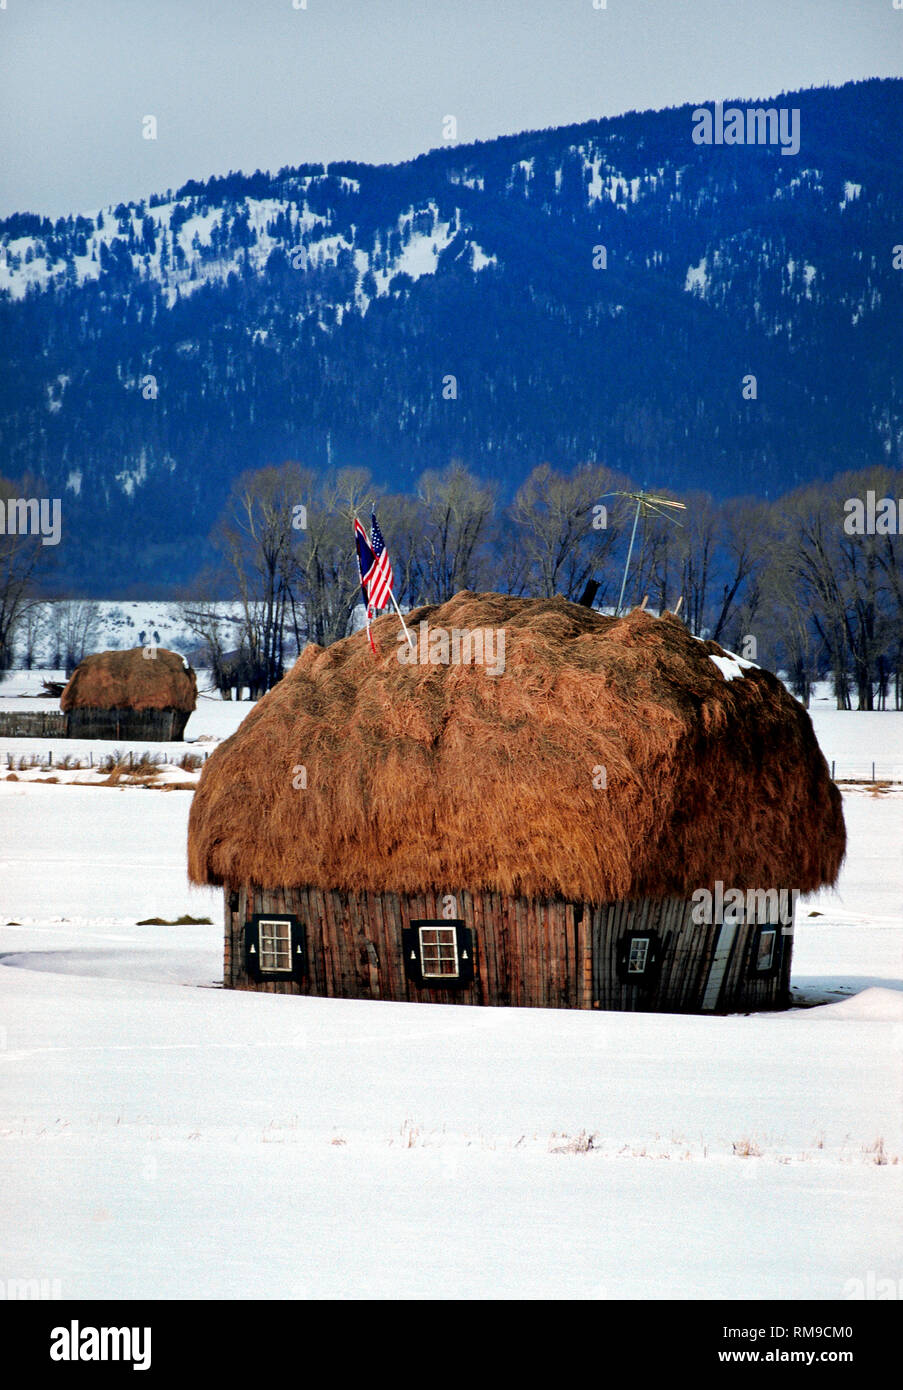 Eine grosse Lieferung von Heu Rinder im Winter zu füttern ist humorvoll, wie ein Haus in diesem Schnee verschleierte abgedeckten Bereich auf einer Ranch in Jackson Hole, Wyoming, USA. Stockfoto